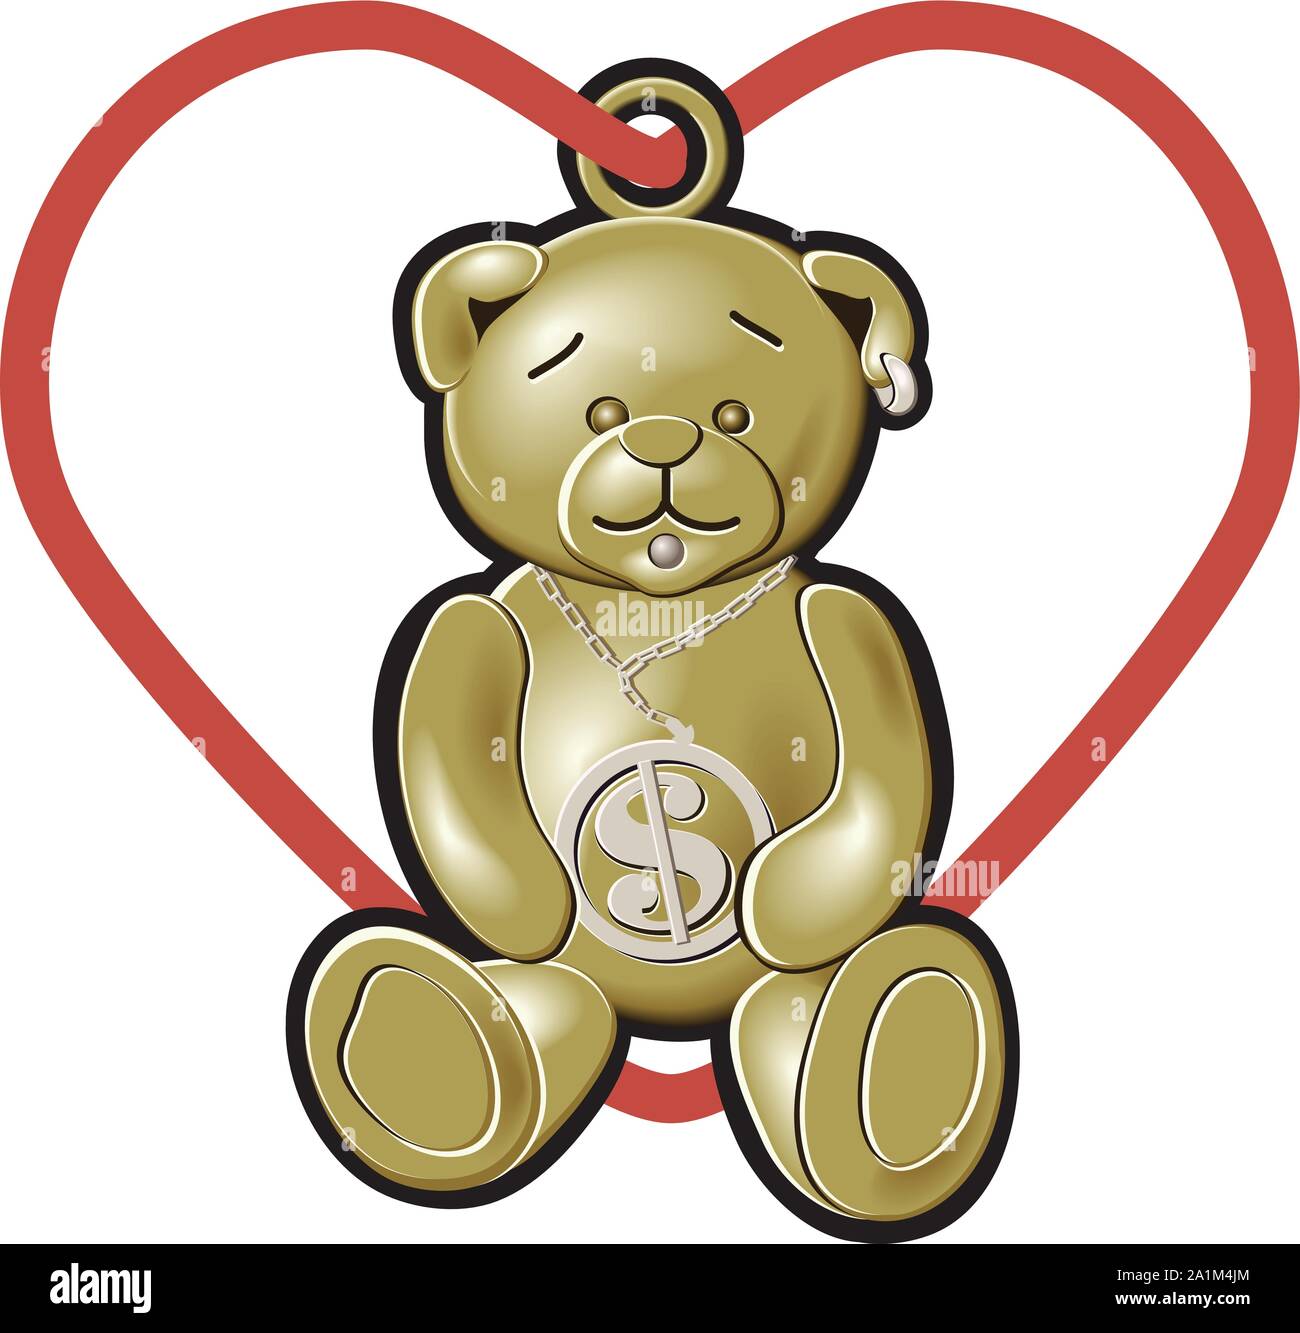 Un ours charme en Or & Argent avec un cœur rouge chaîne mise en forme d'exécution à travers une boucle sur le dessus Illustration de Vecteur